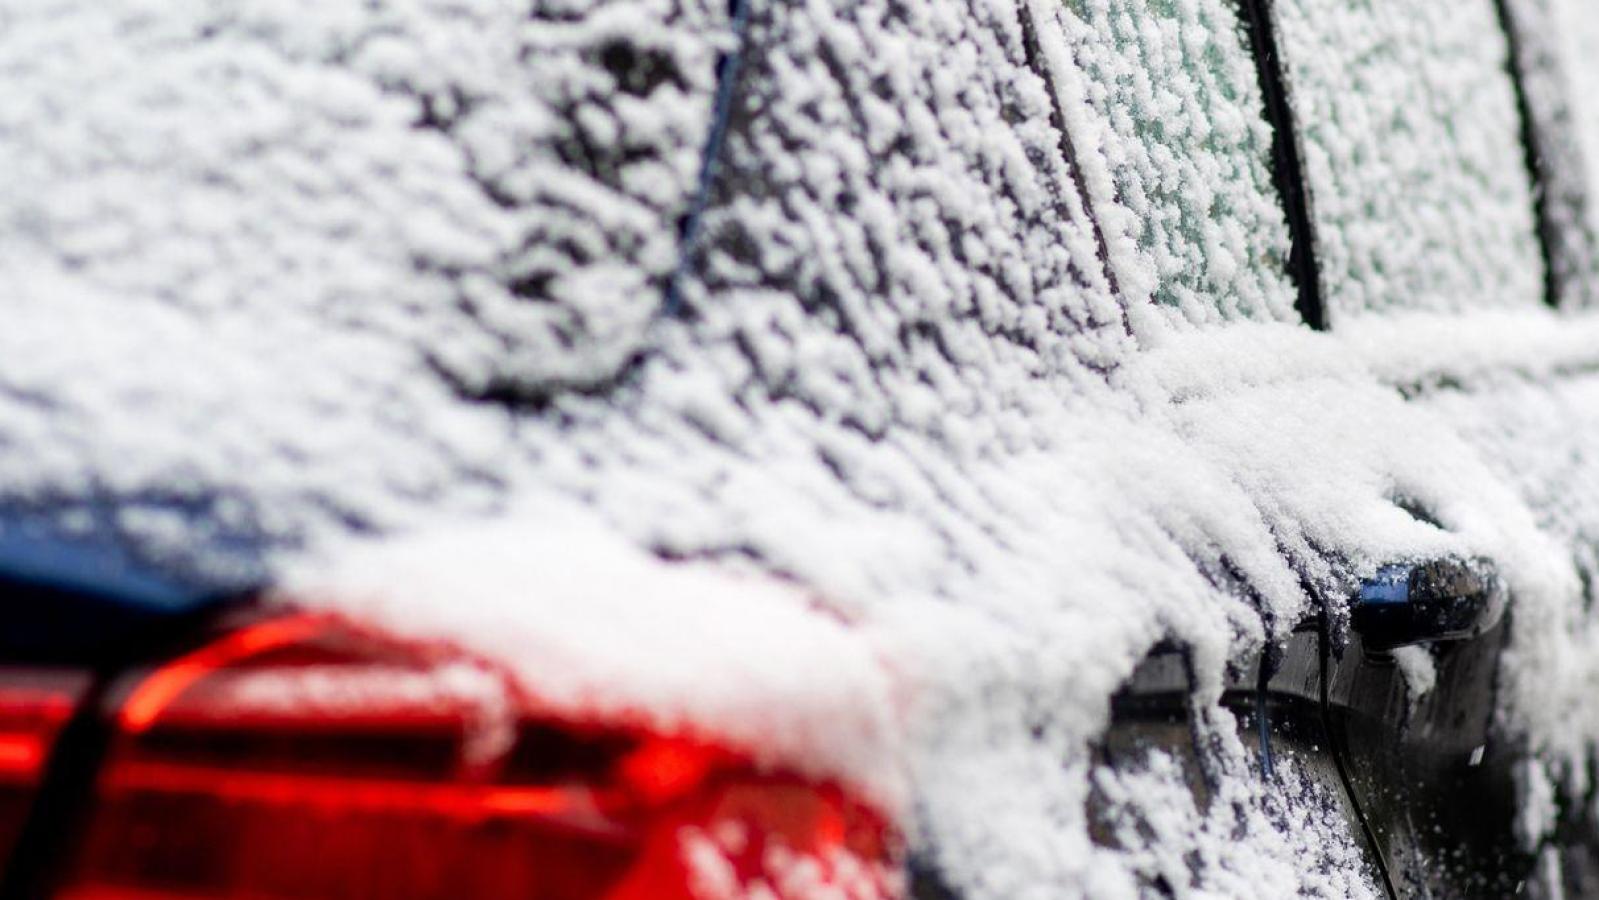 Sanfter Druck und Pflege: Hilfe bei zugefrorener AutotürNews 